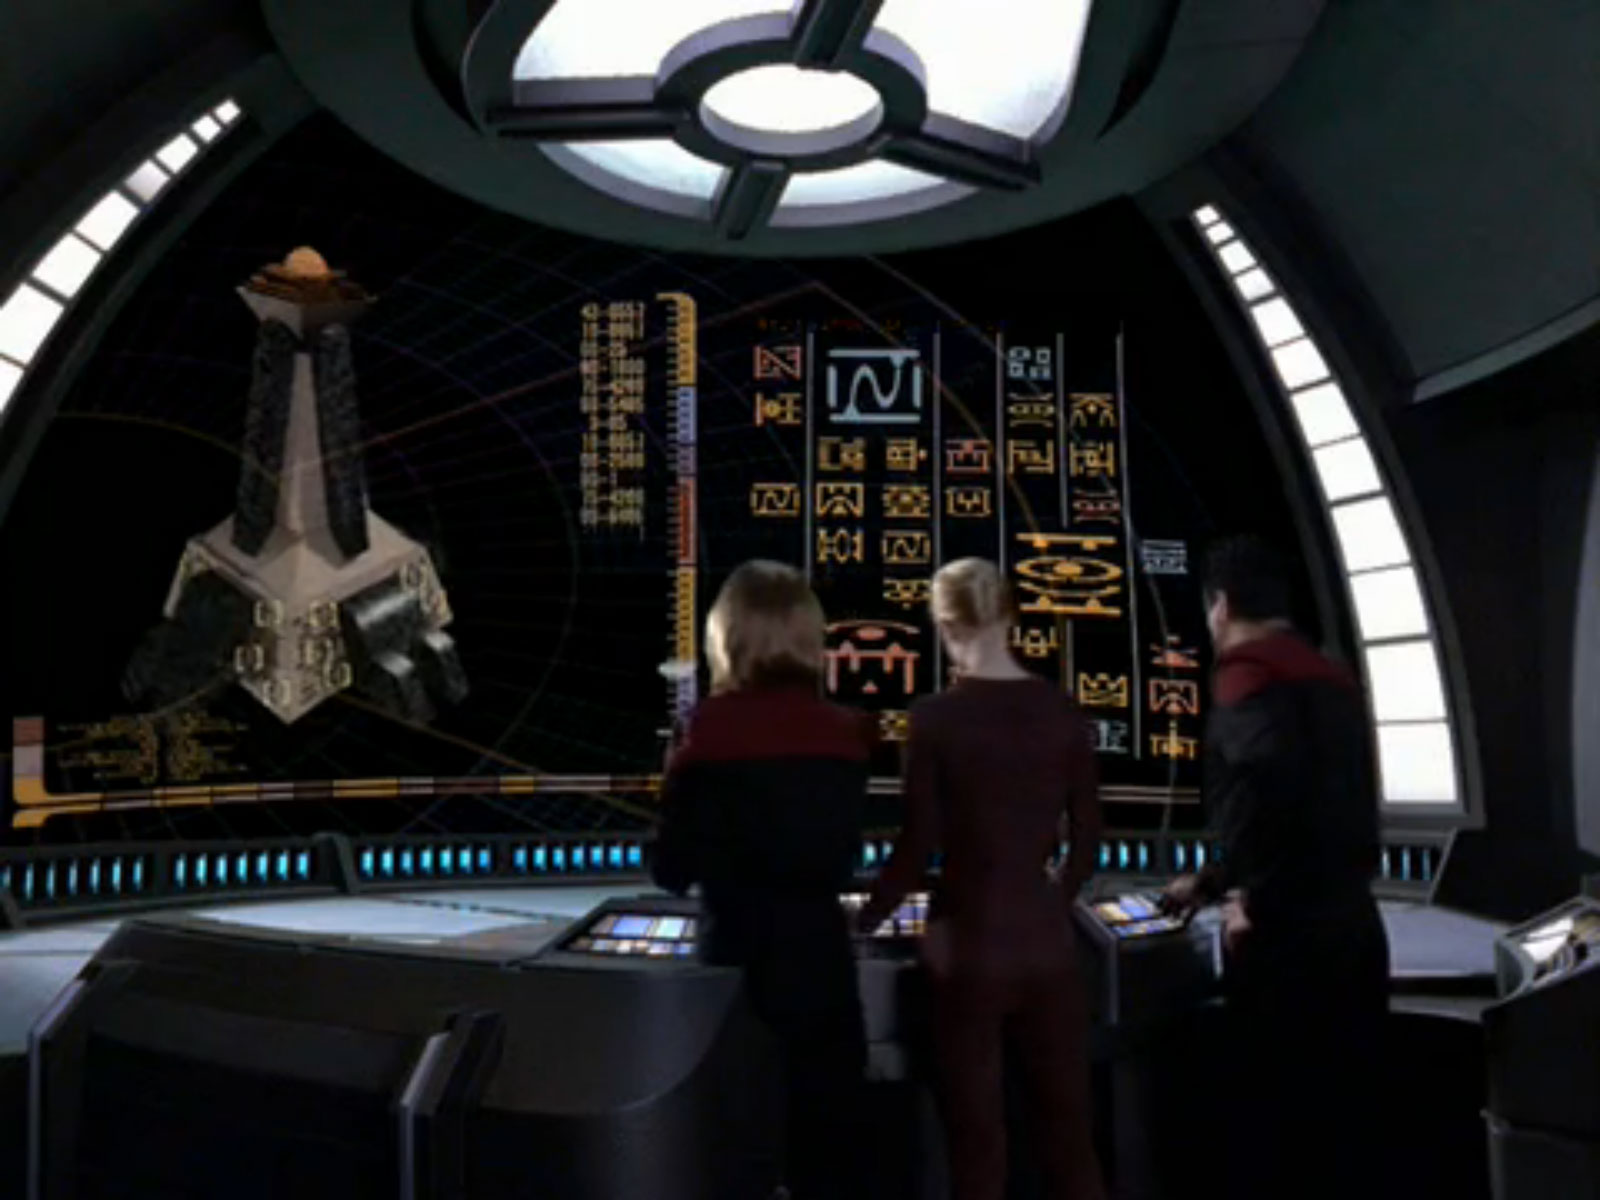 Star Trek Voyager Memorial 2